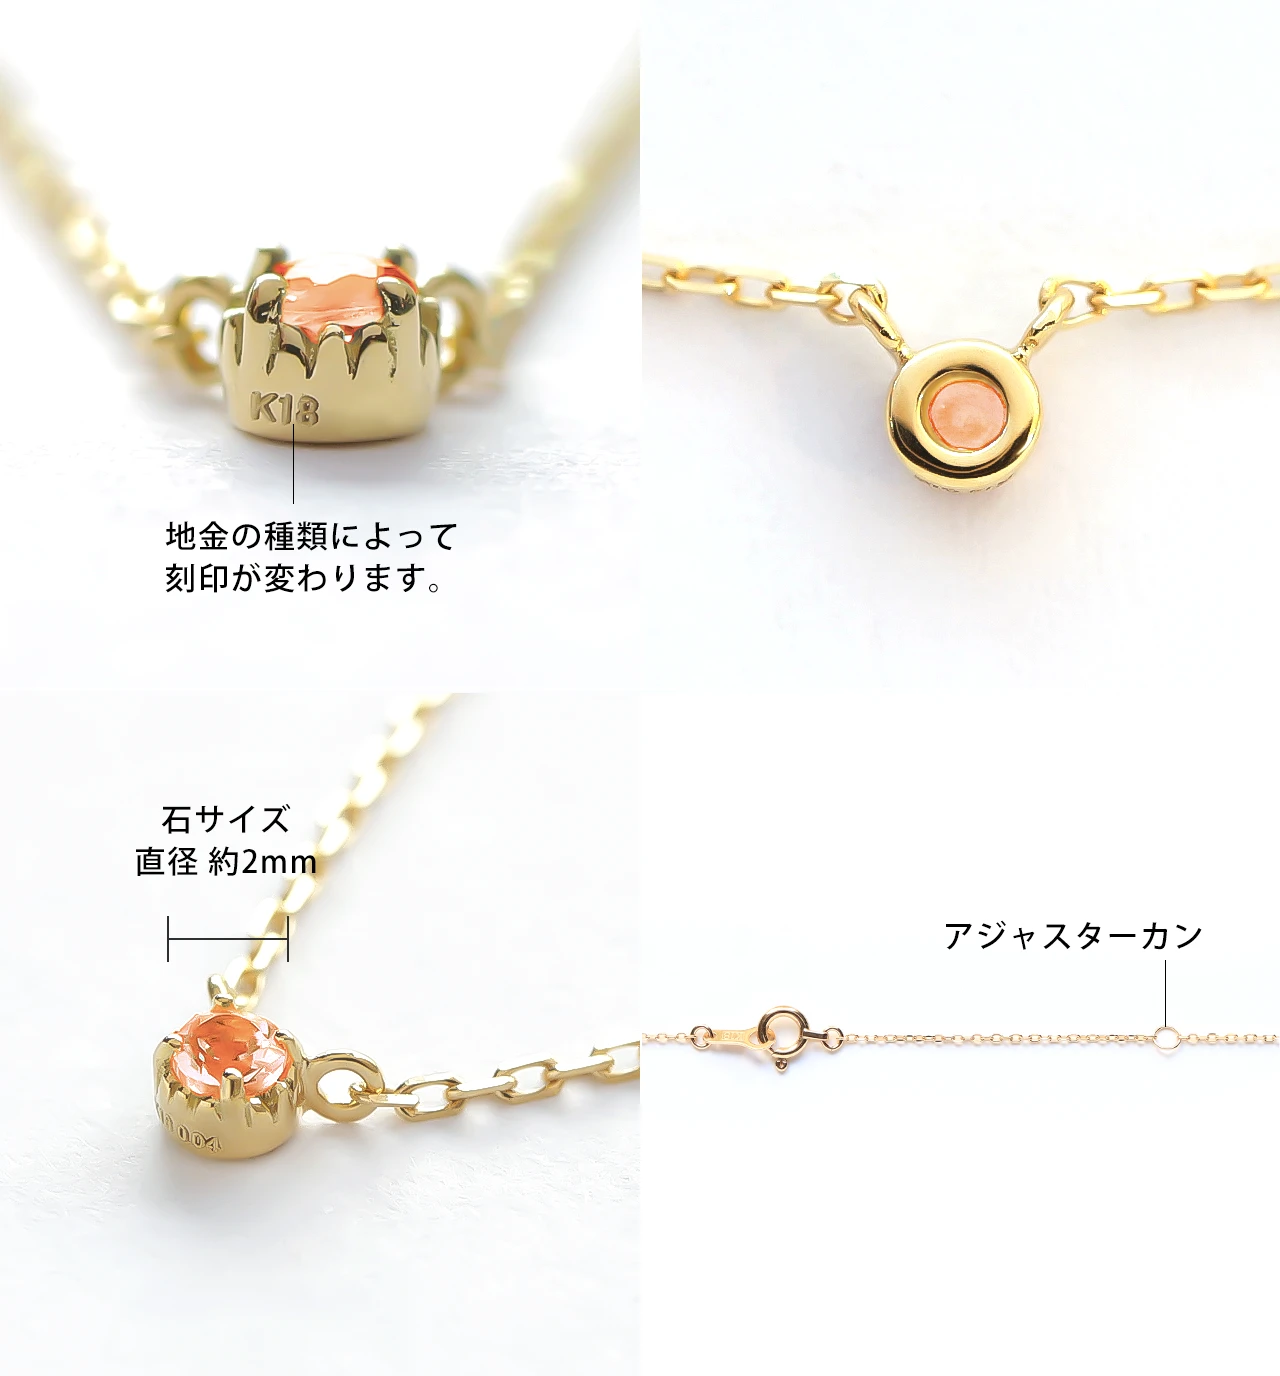 9月誕生石 K10 オレンジサファイアの一粒ネックレス ~Petela~ (K18 変更可能) ジュエリーブランド「RASPIA Jewelry」